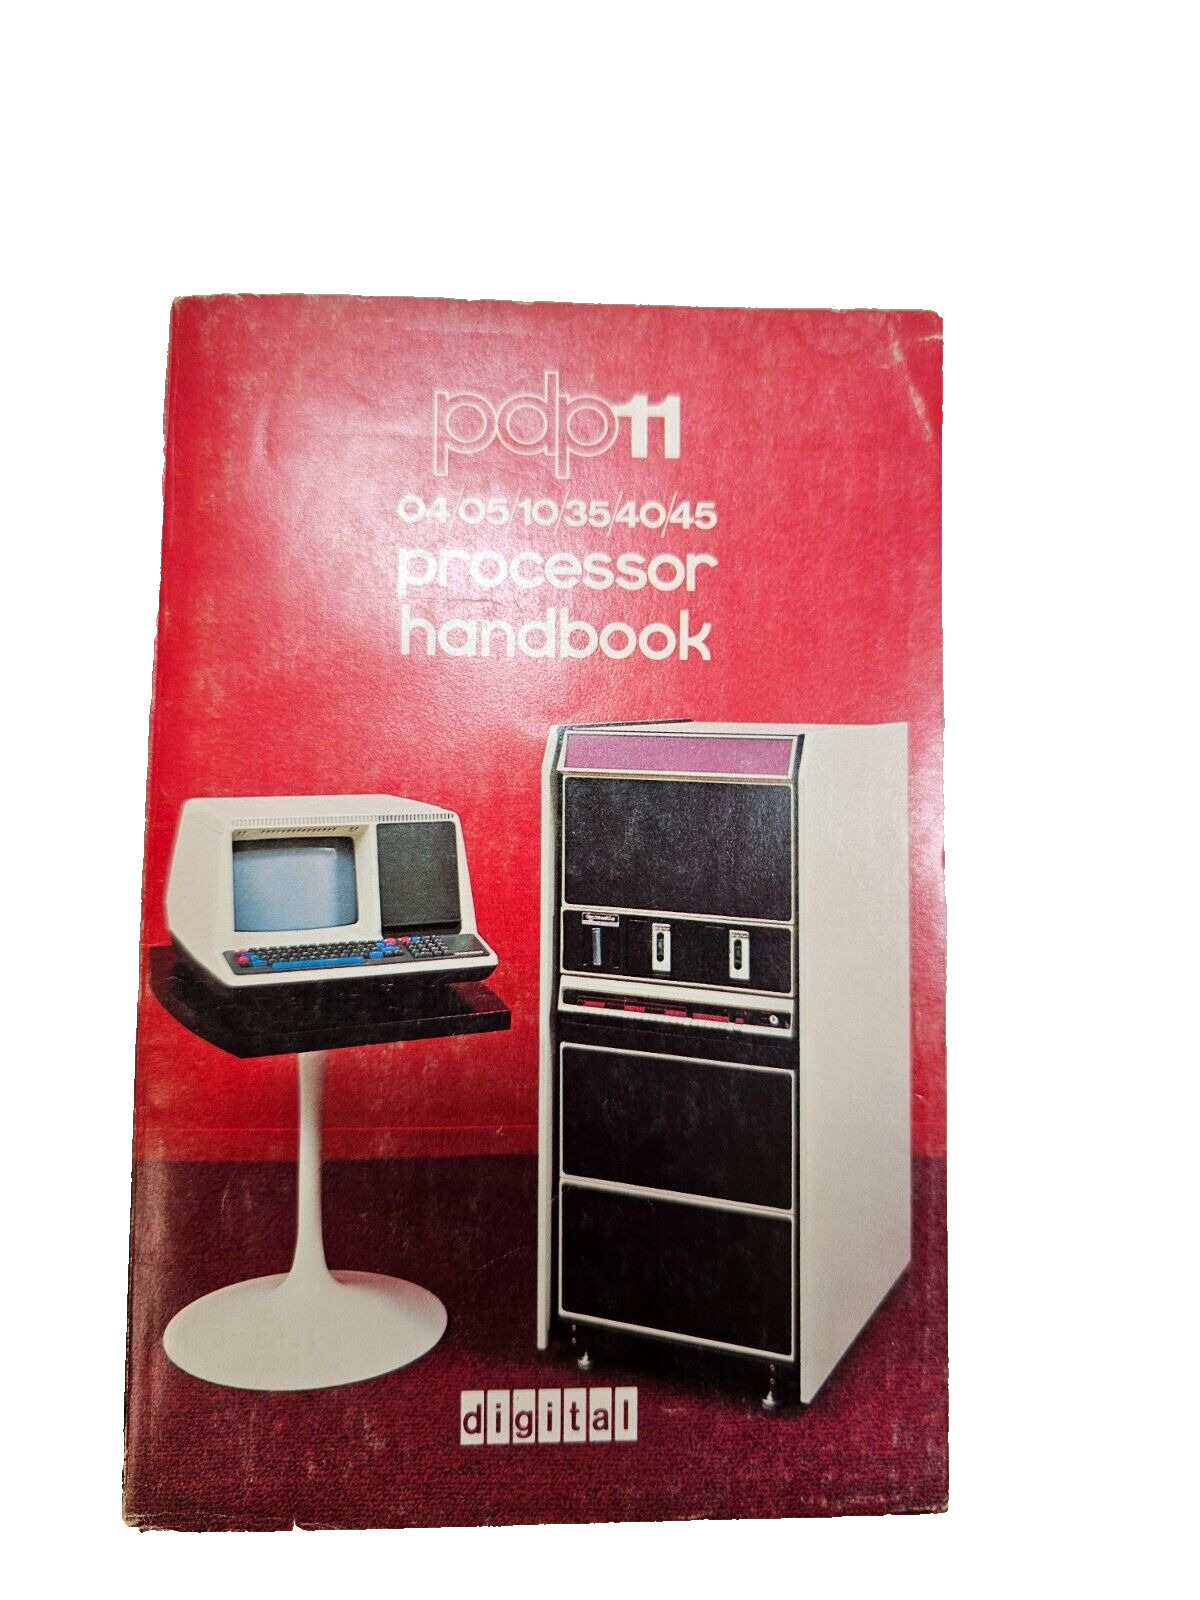 Digital Equipment Corp / DEC - Pdp11 04/05/10/35/40/45 Processor Handbook, 1975